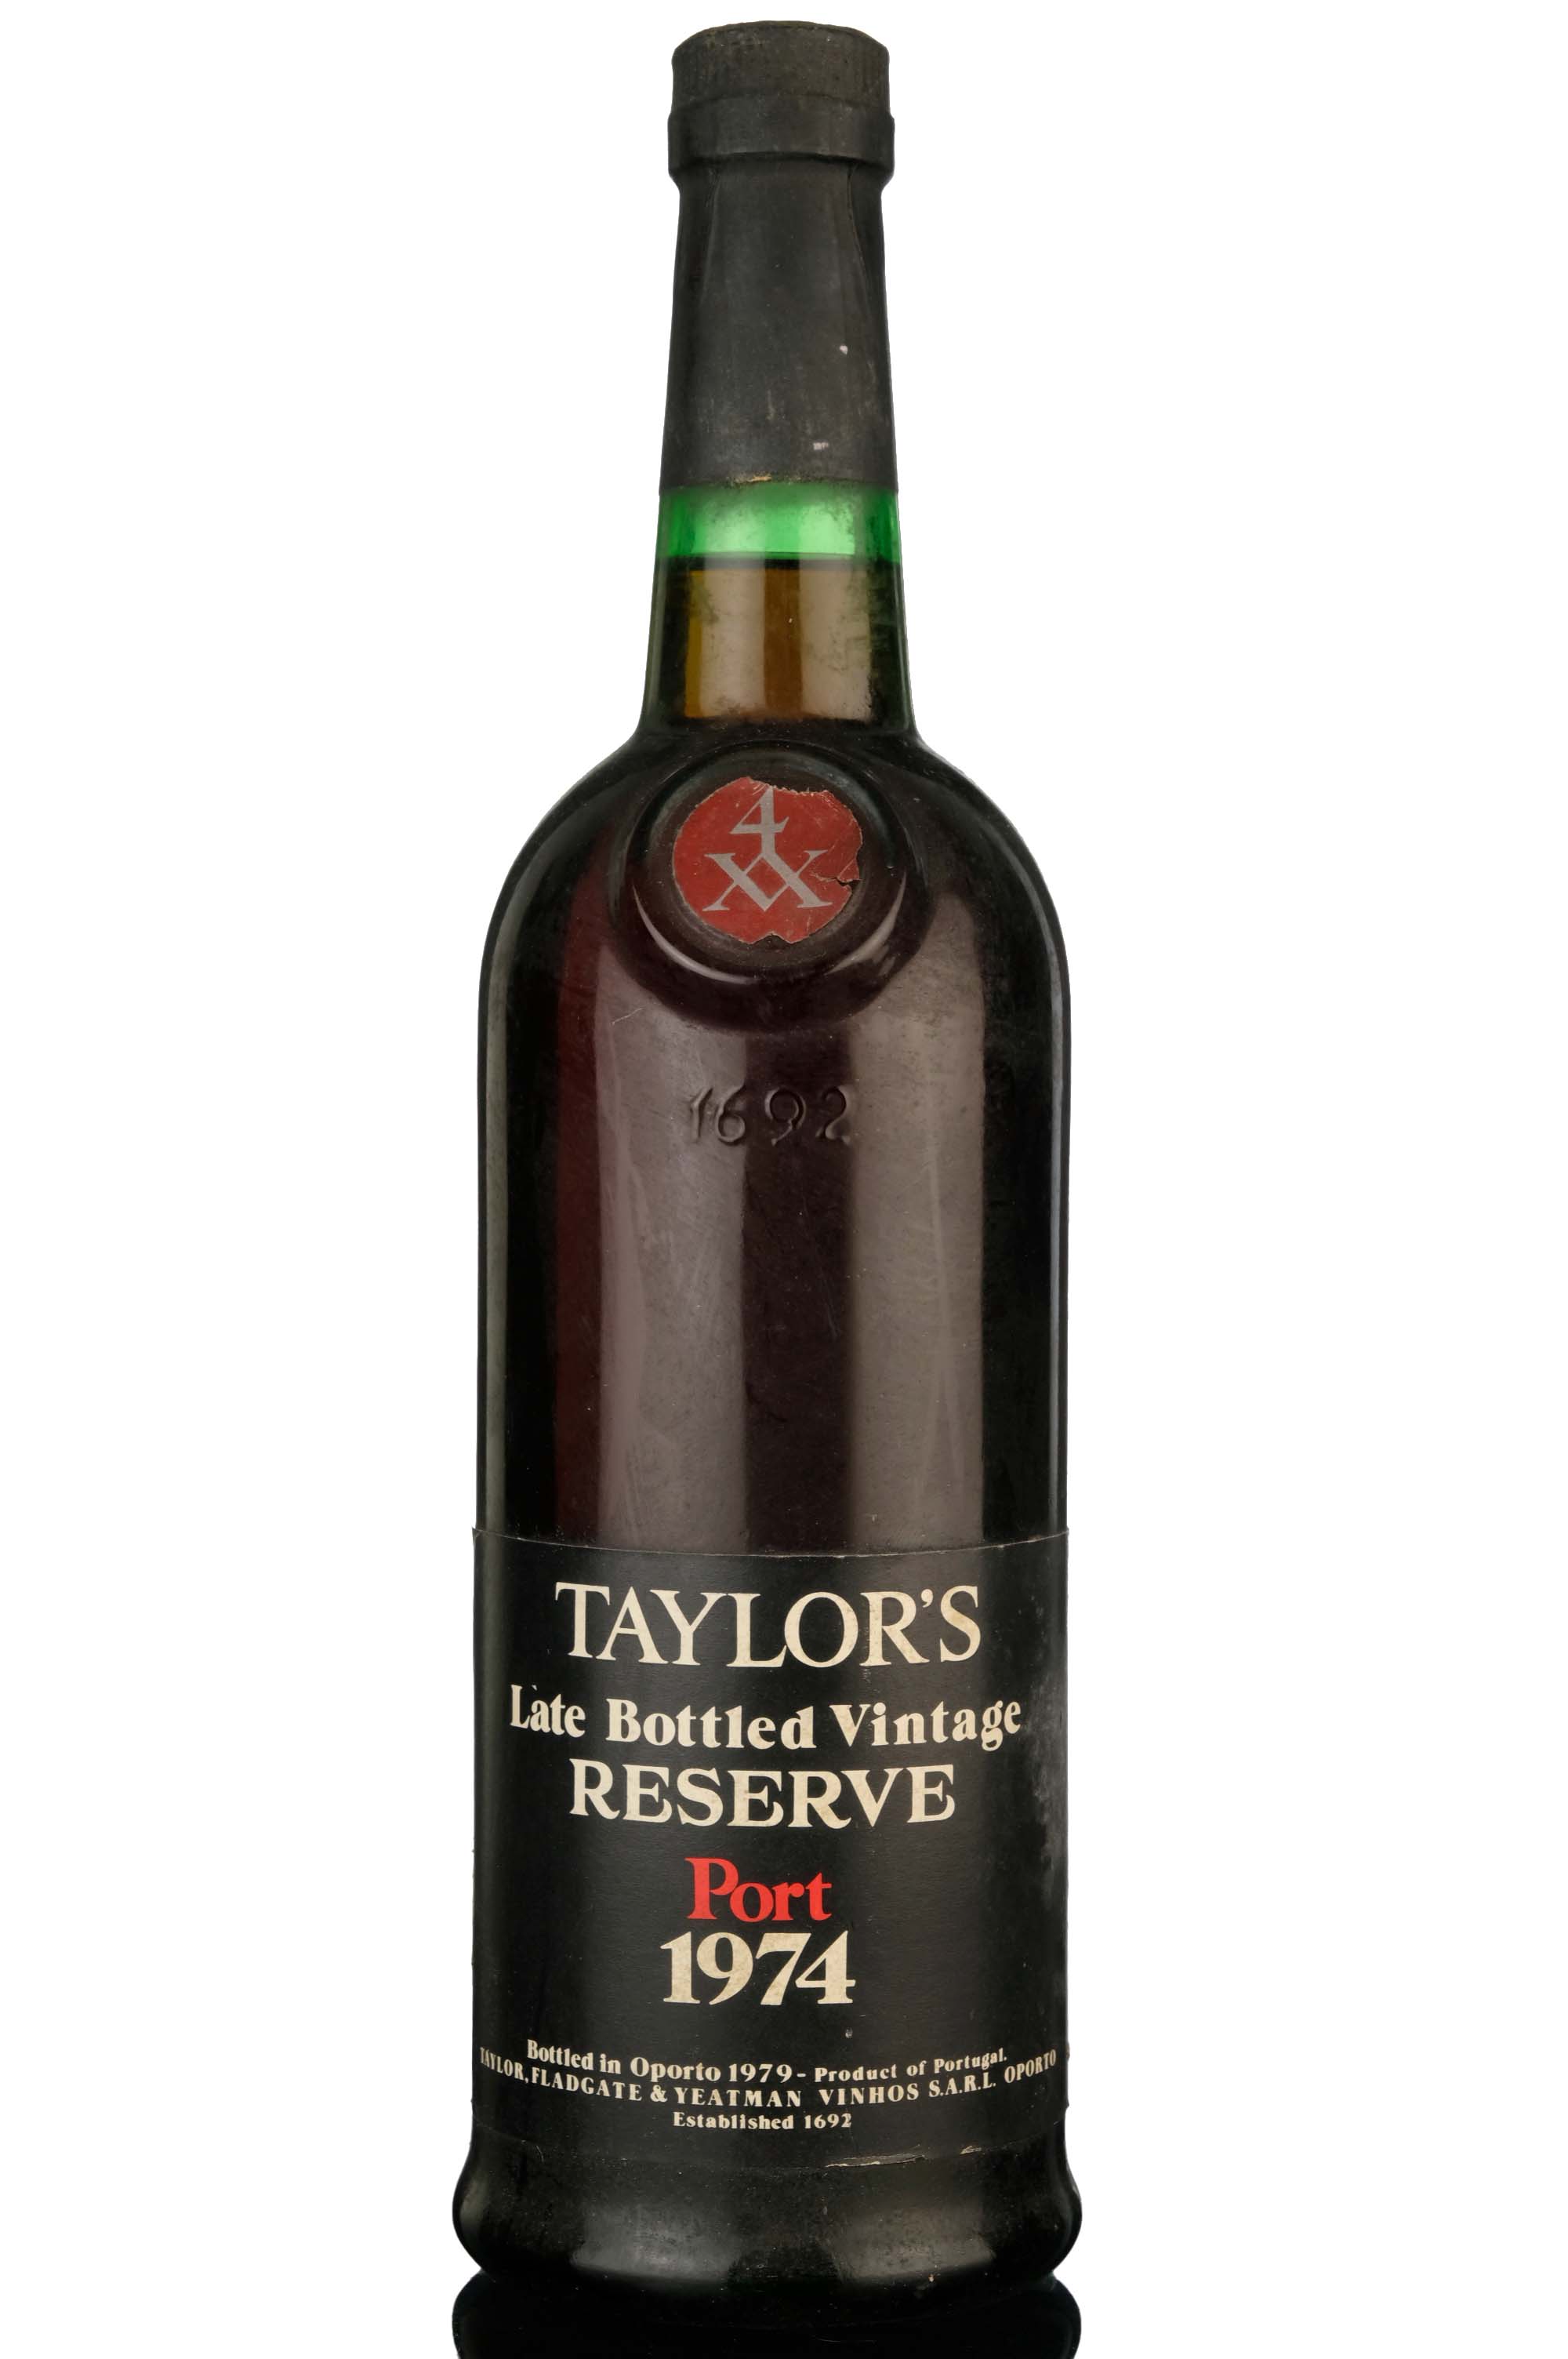 Taylors 1974 Vintage Port - Bottled 1979